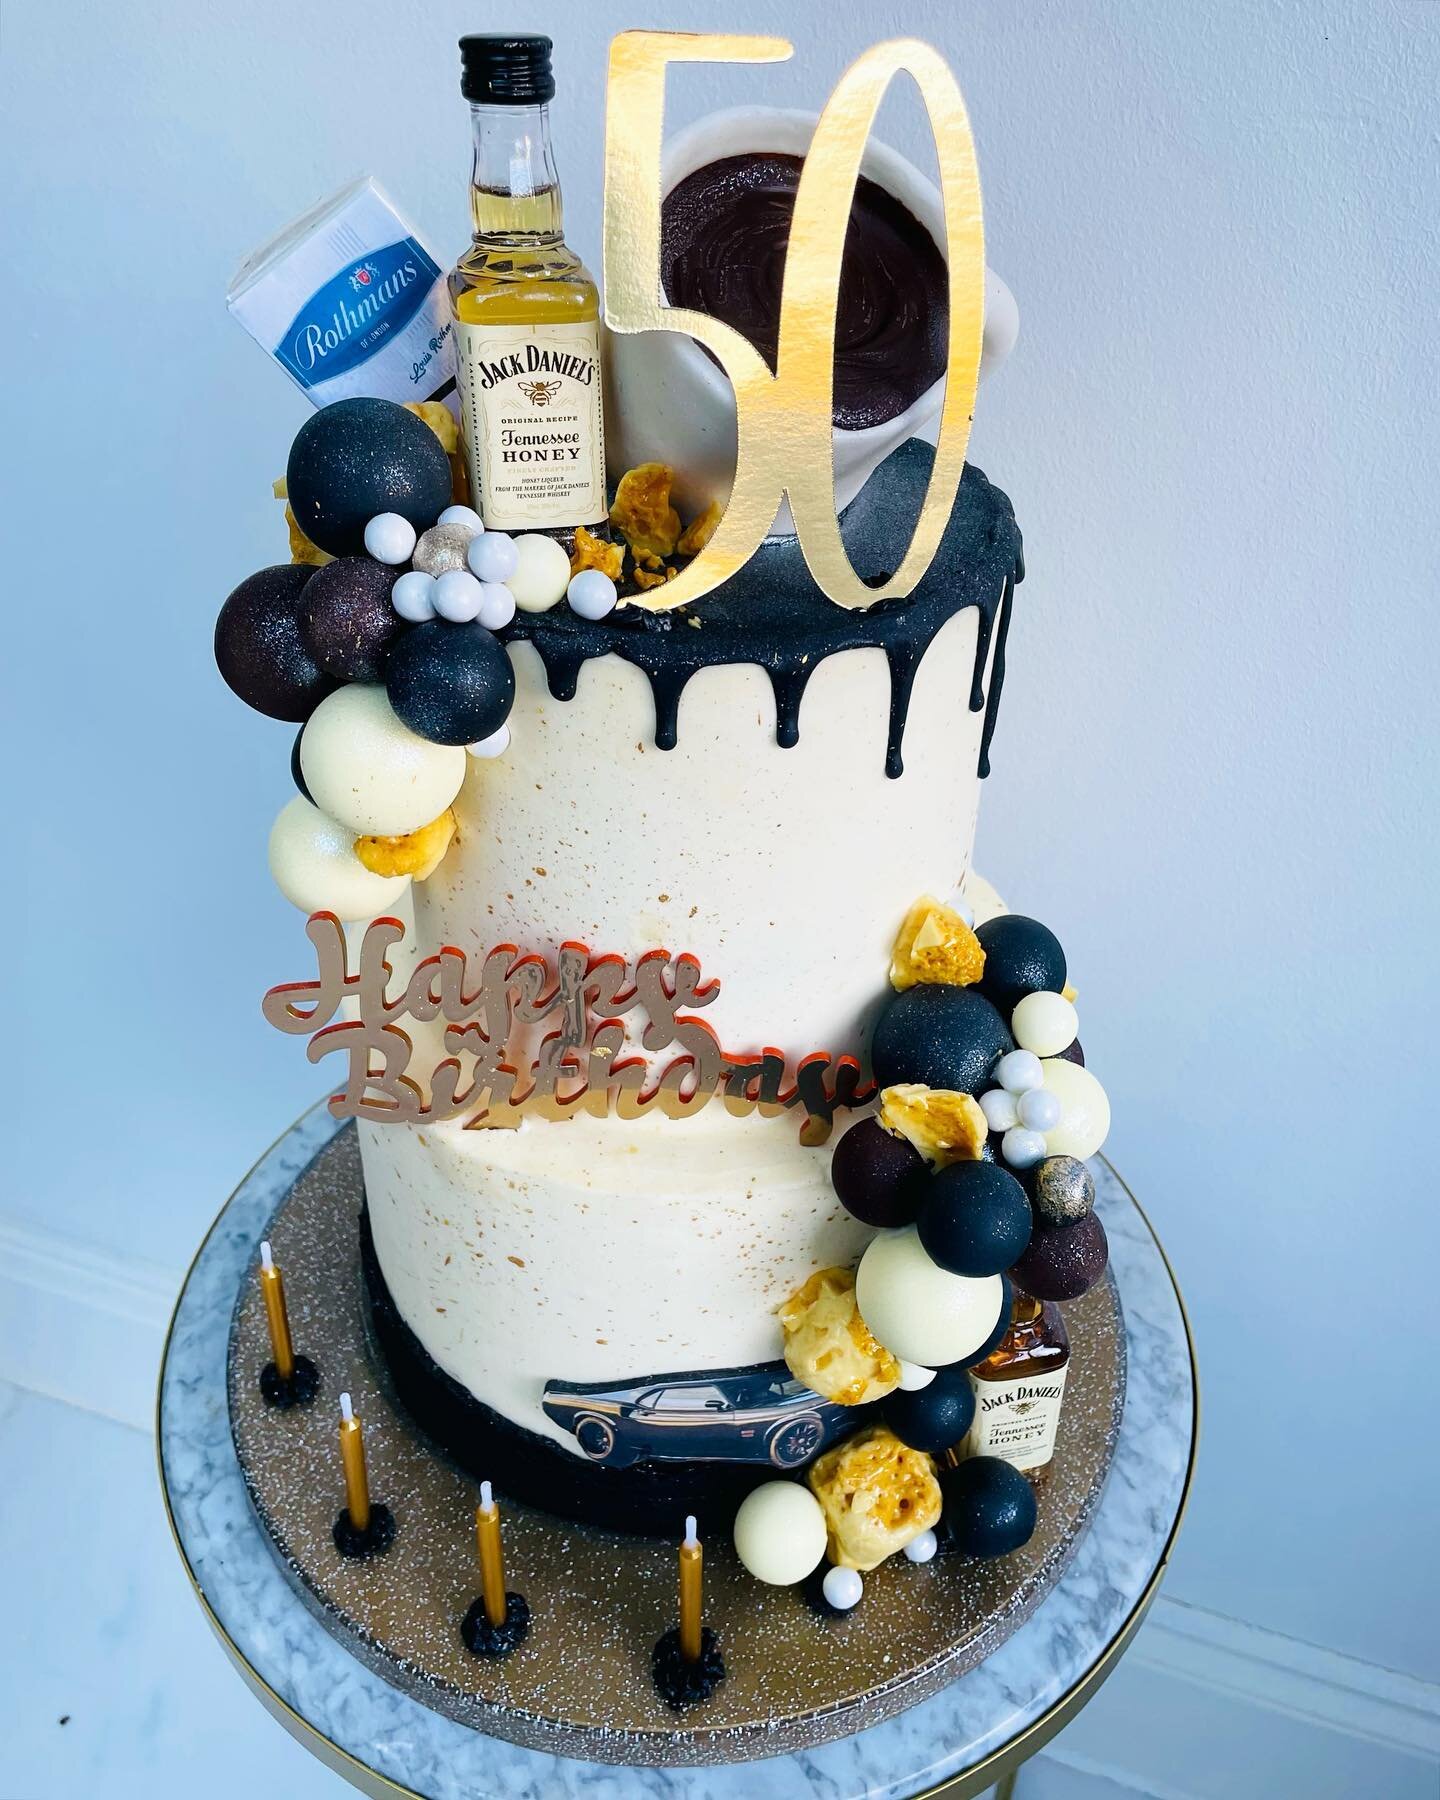 Dad&rsquo;s Faves! 

#cakes #cakestagram #cakedecorating #cakedecorating #dadscake #cakefordads #birthdaycake #cakes #dripcakes #buttercreamcake #whiskycake #jackdaniels